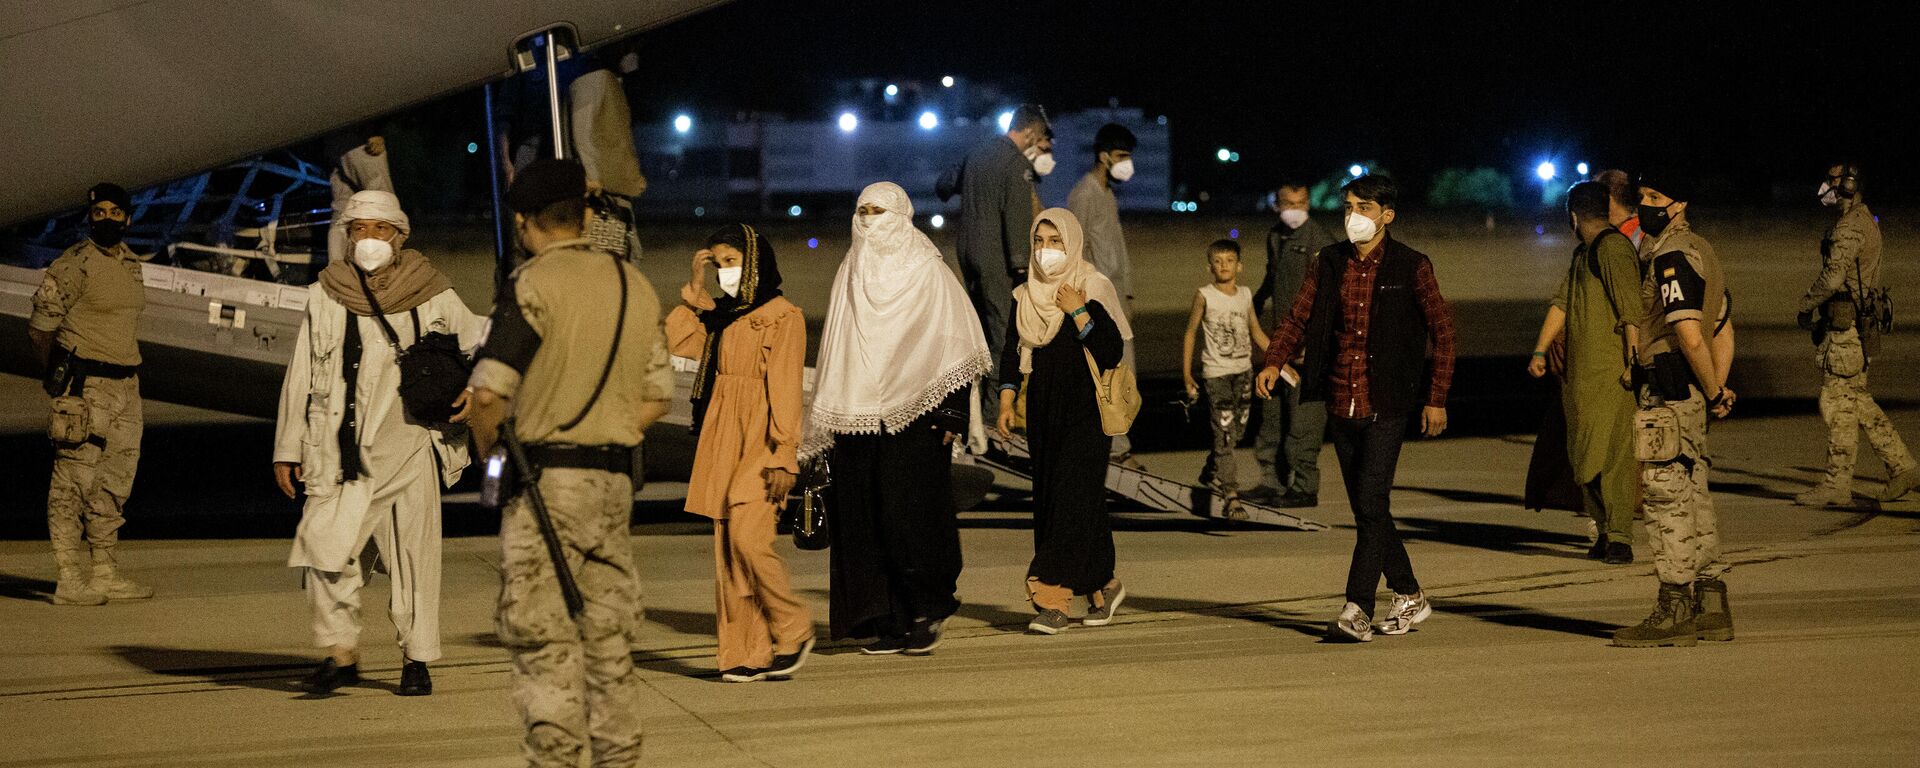 Varias personas repatriadas llegan a la pista tras bajarse del avión A400M en el que ha sido evacuados de Kabul, a 19 de agosto de 2021, en Torrejón de Ardoz, Madrid - Sputnik Mundo, 1920, 19.08.2021